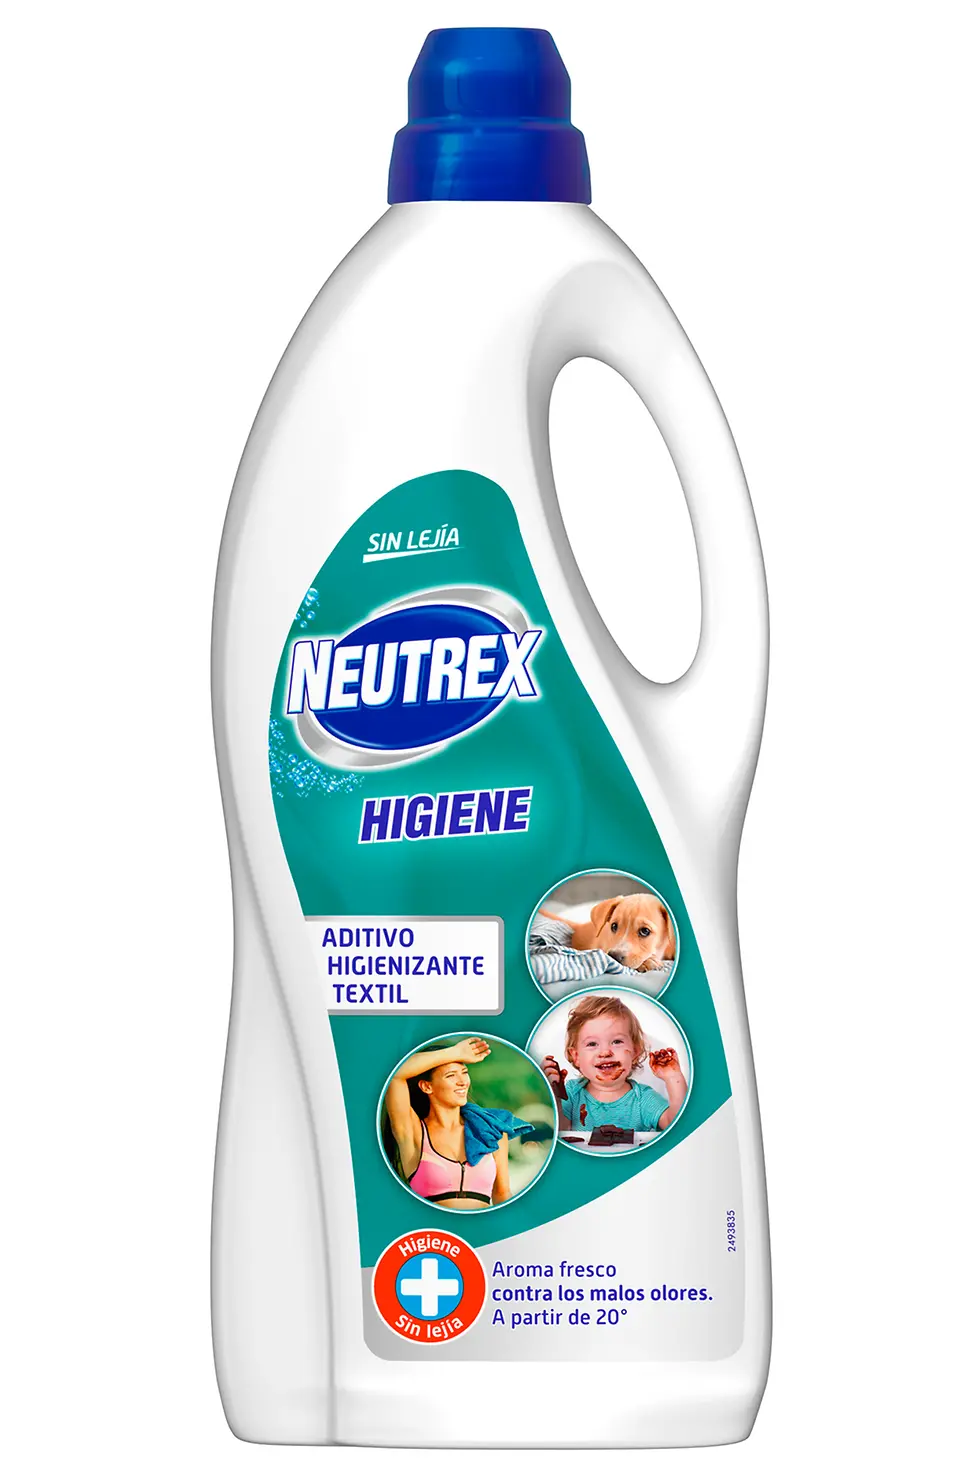 Neutrex Higiene